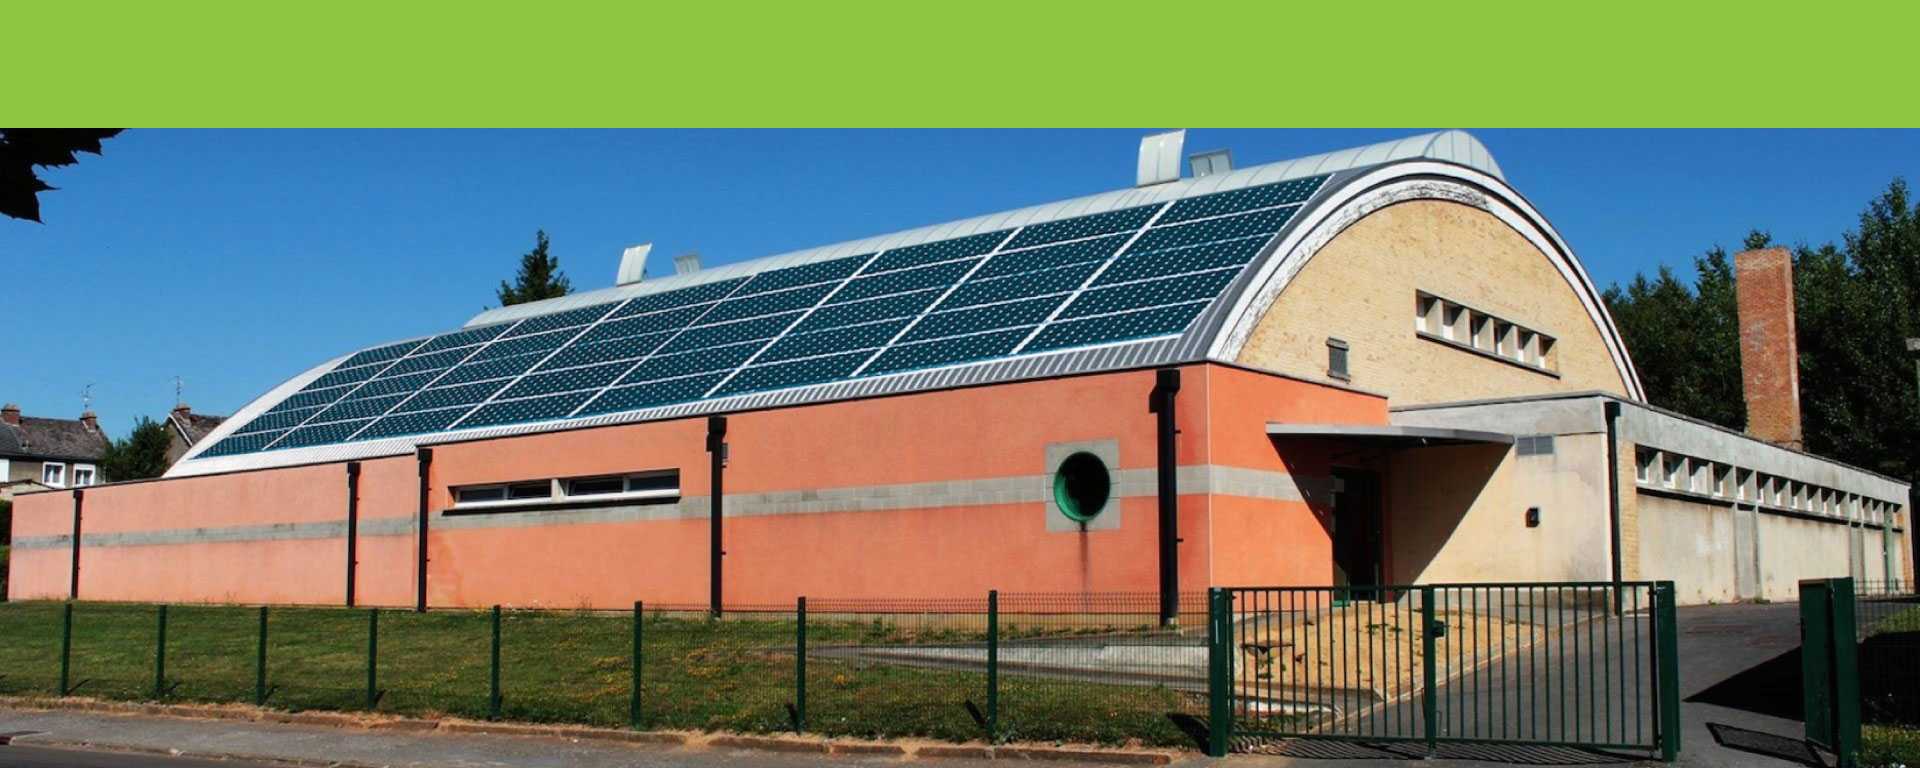 Proposition pour l'installation solaire: Ecole Aragon et Mendes France, Gymnase Marie-José Pérec,  Gymnase Léo Lagrange